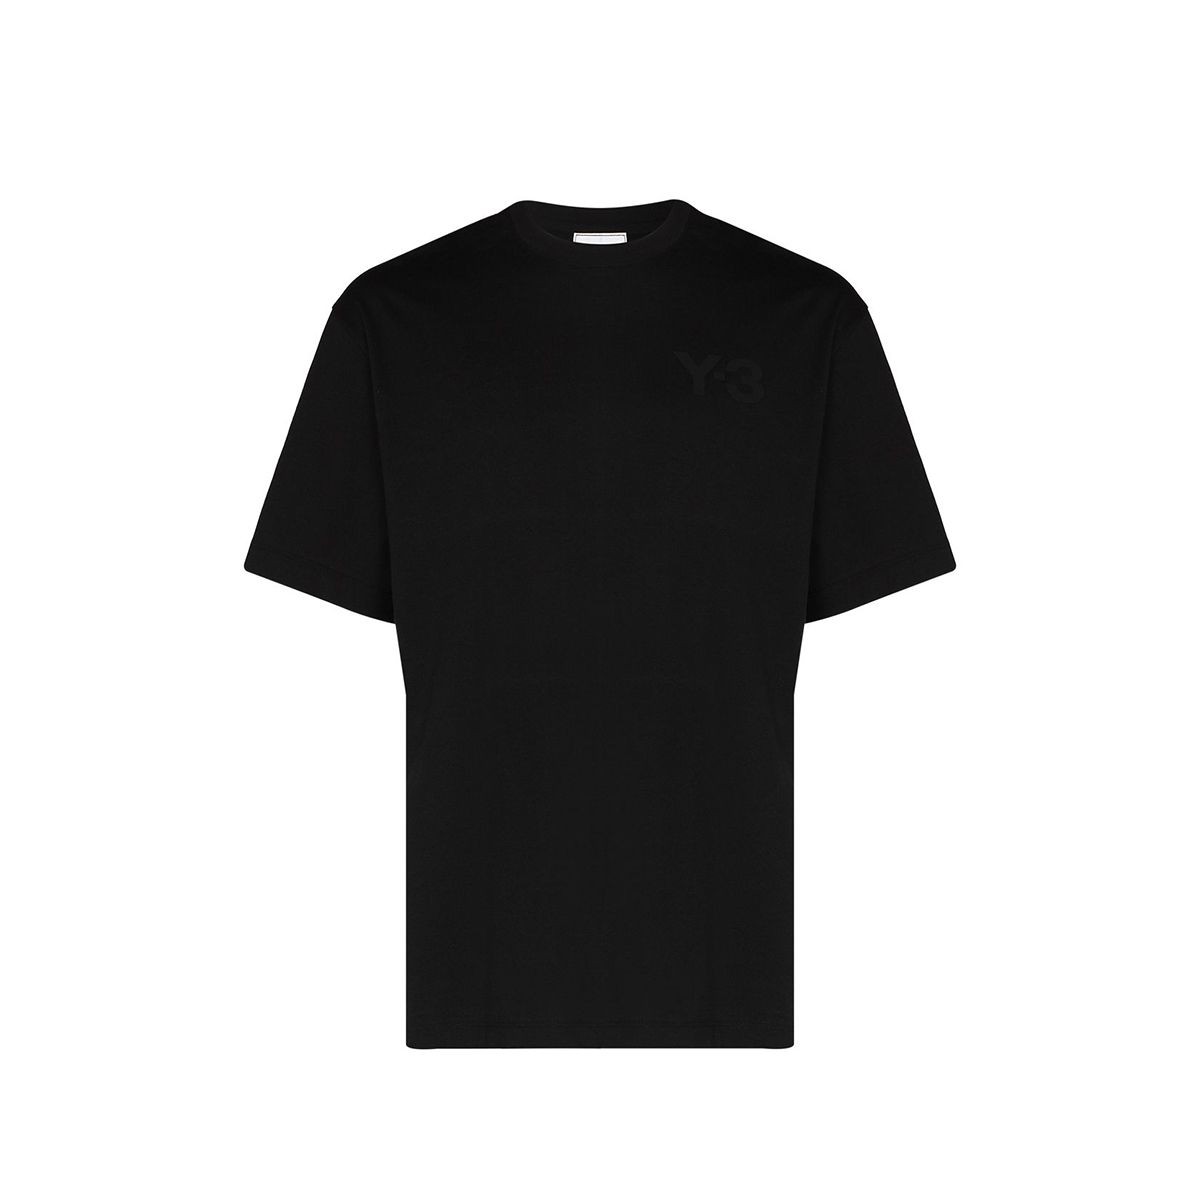 Tonal Logo Black T-Shirt